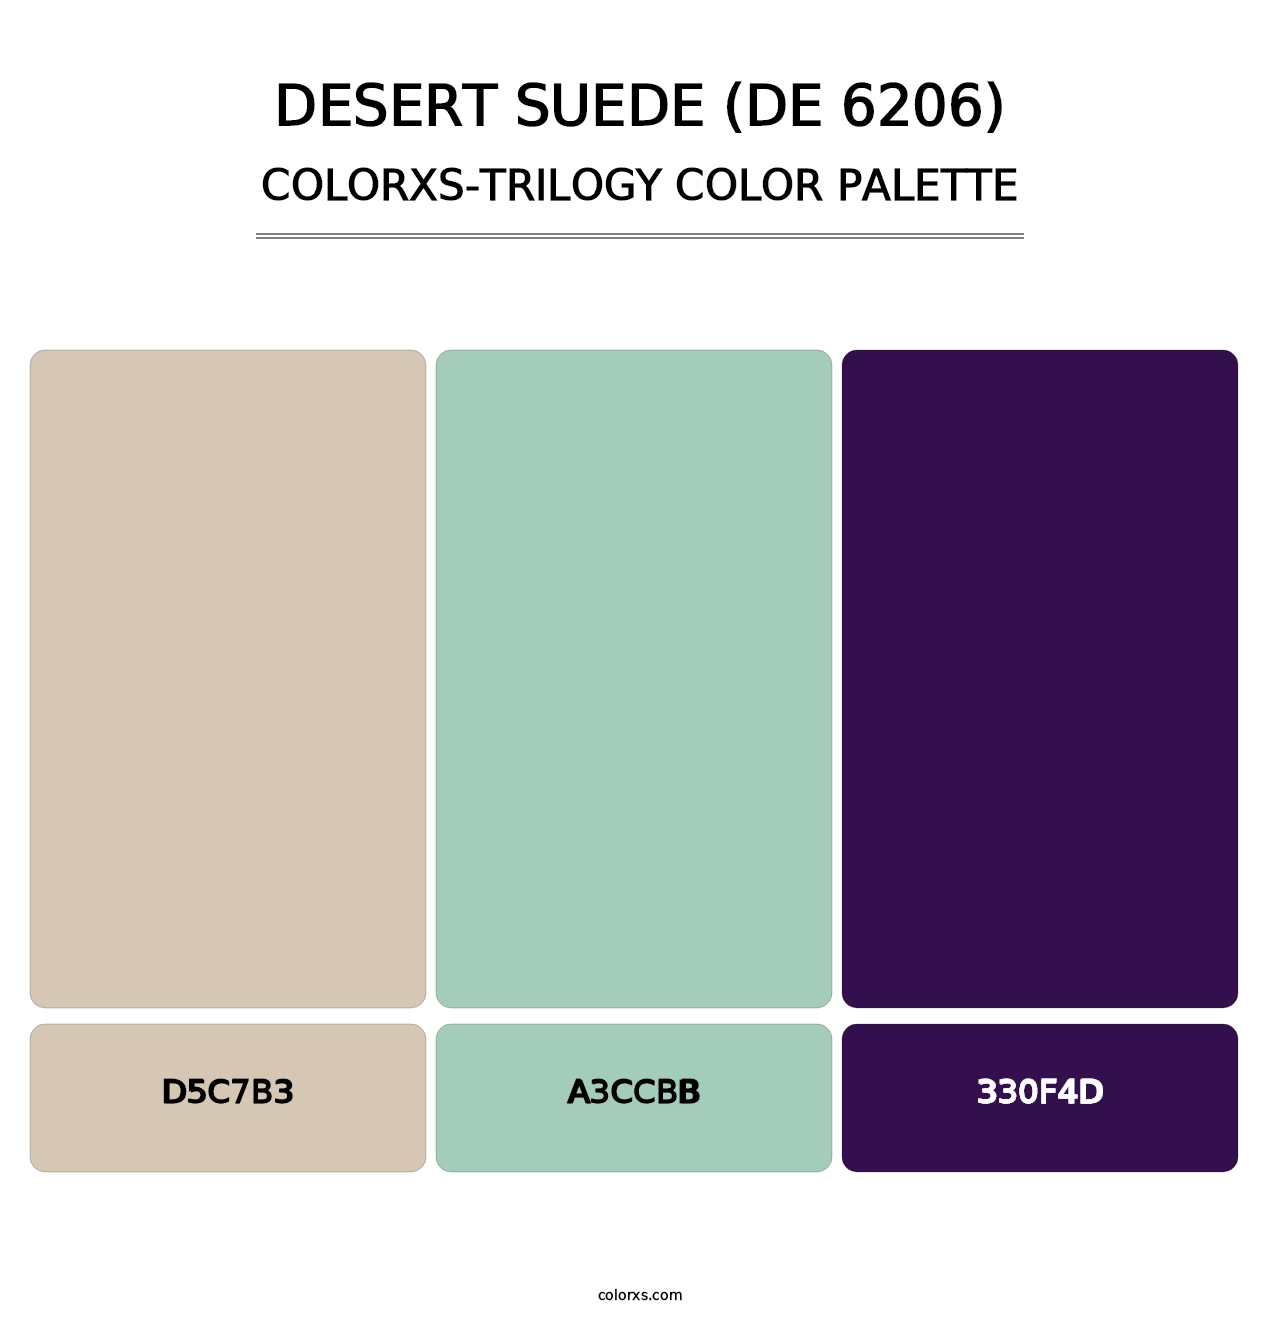 Desert Suede (DE 6206) - Colorxs Trilogy Palette